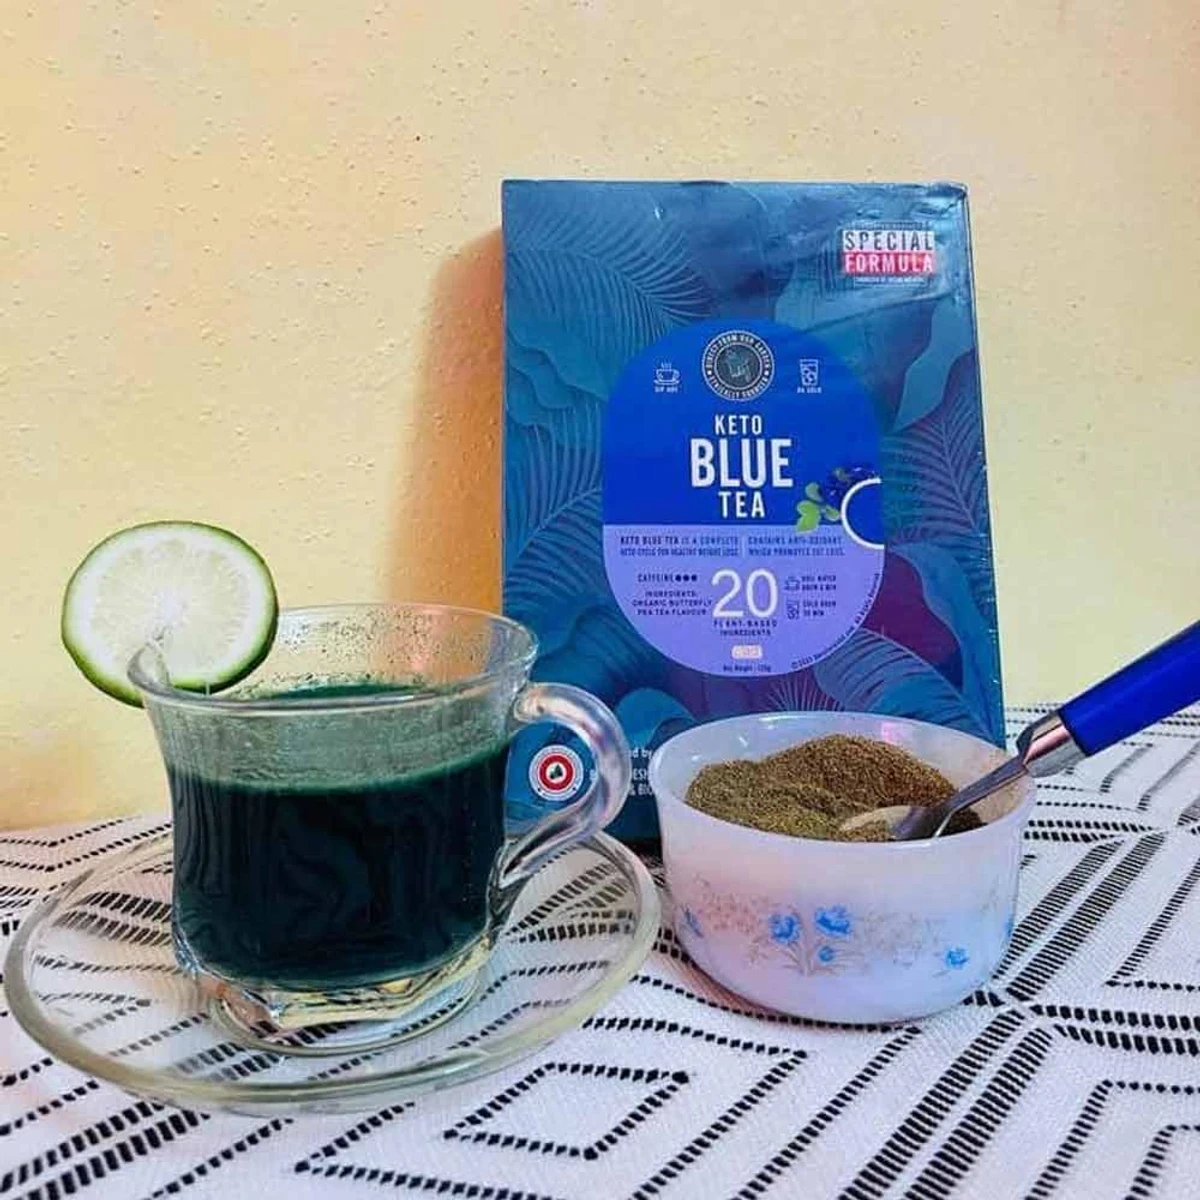 keto blue tea দুই মাসের কোর্স (2 packet)